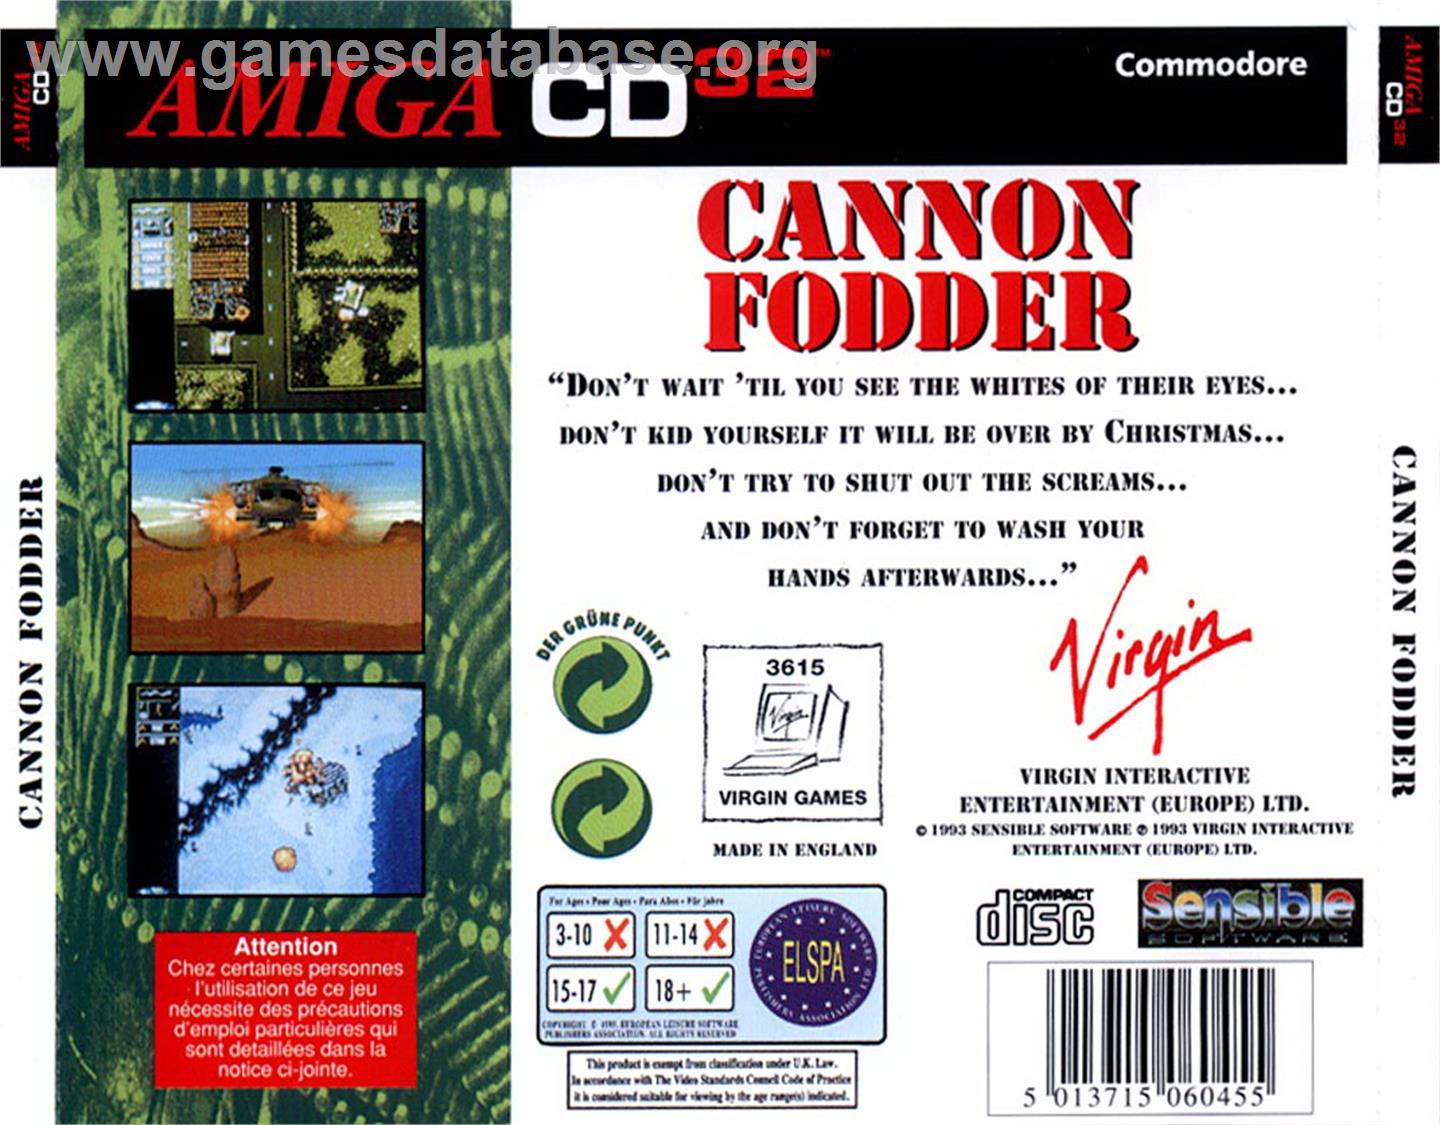 Cannon Fodder - Commodore Amiga CD32 - Artwork - Box Back